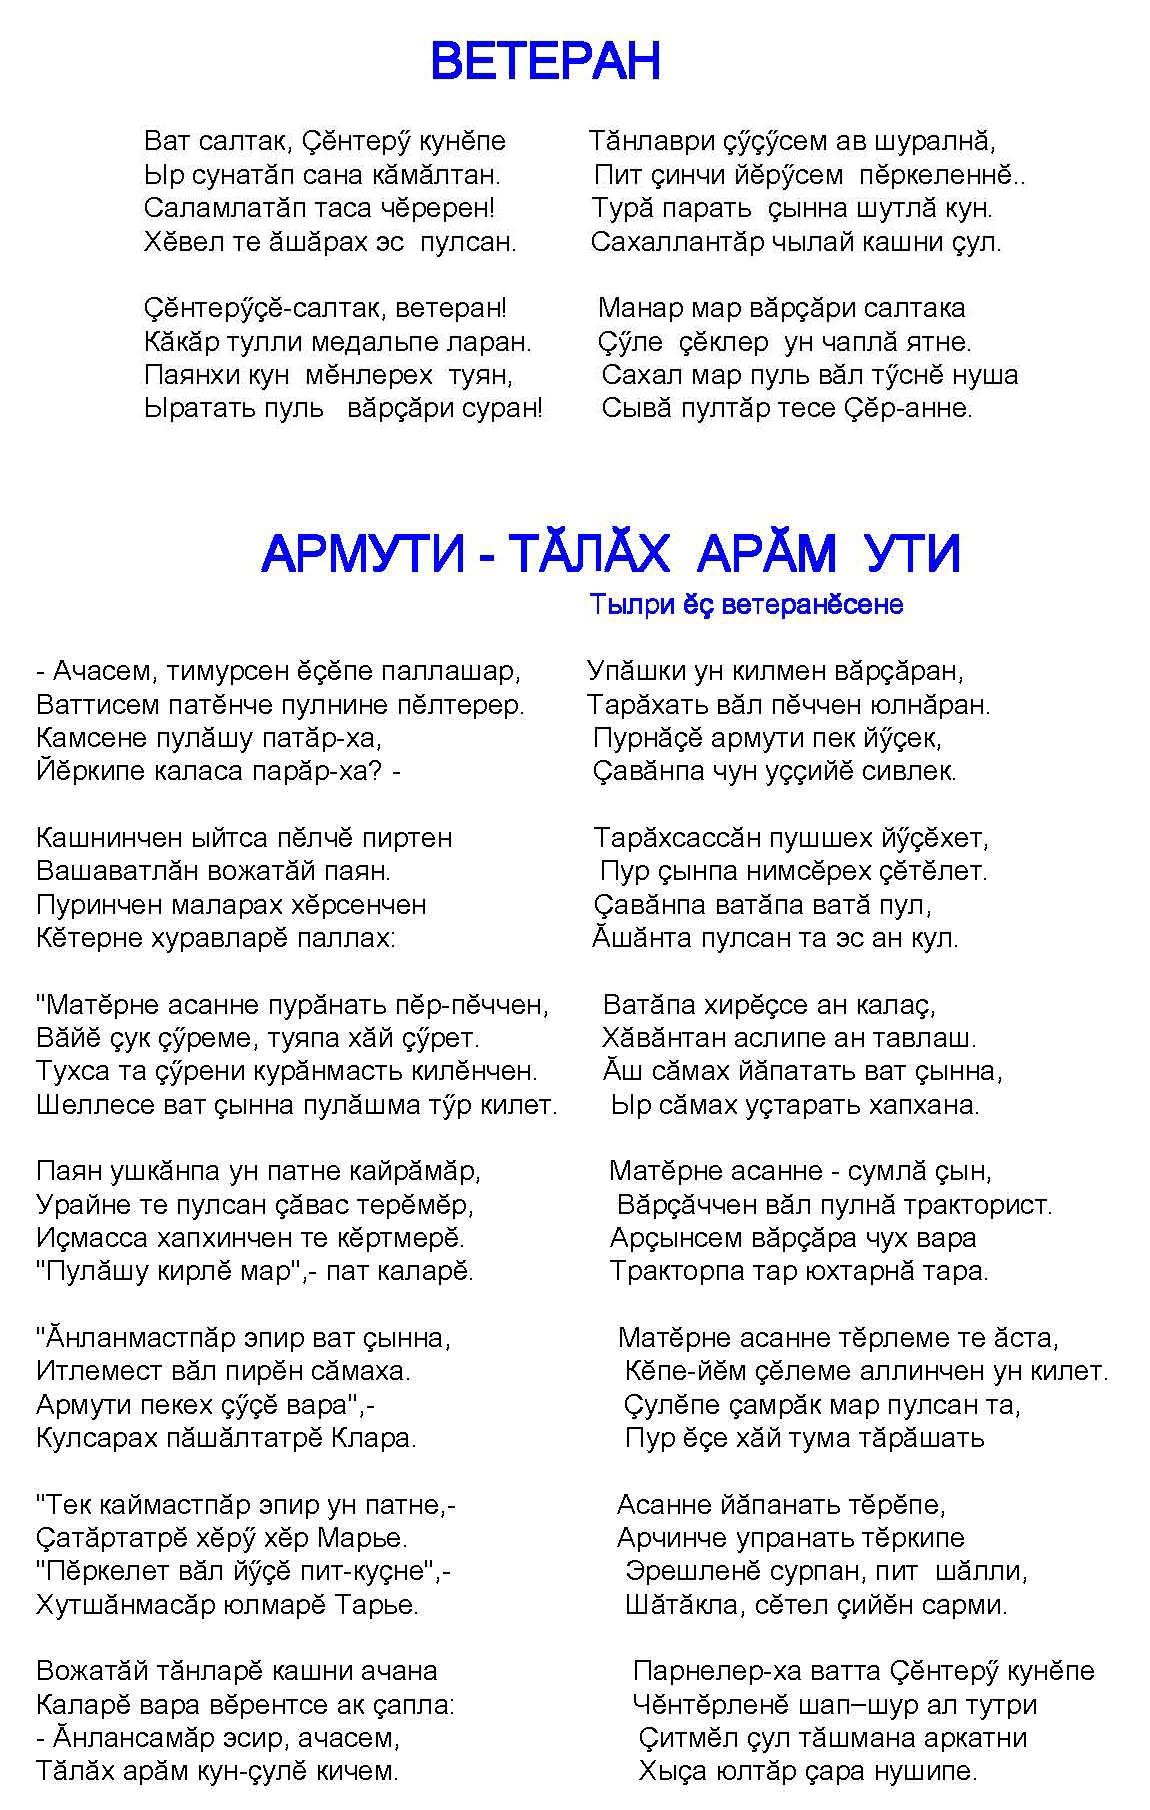 Открытки с днем рождения на чувашском языке